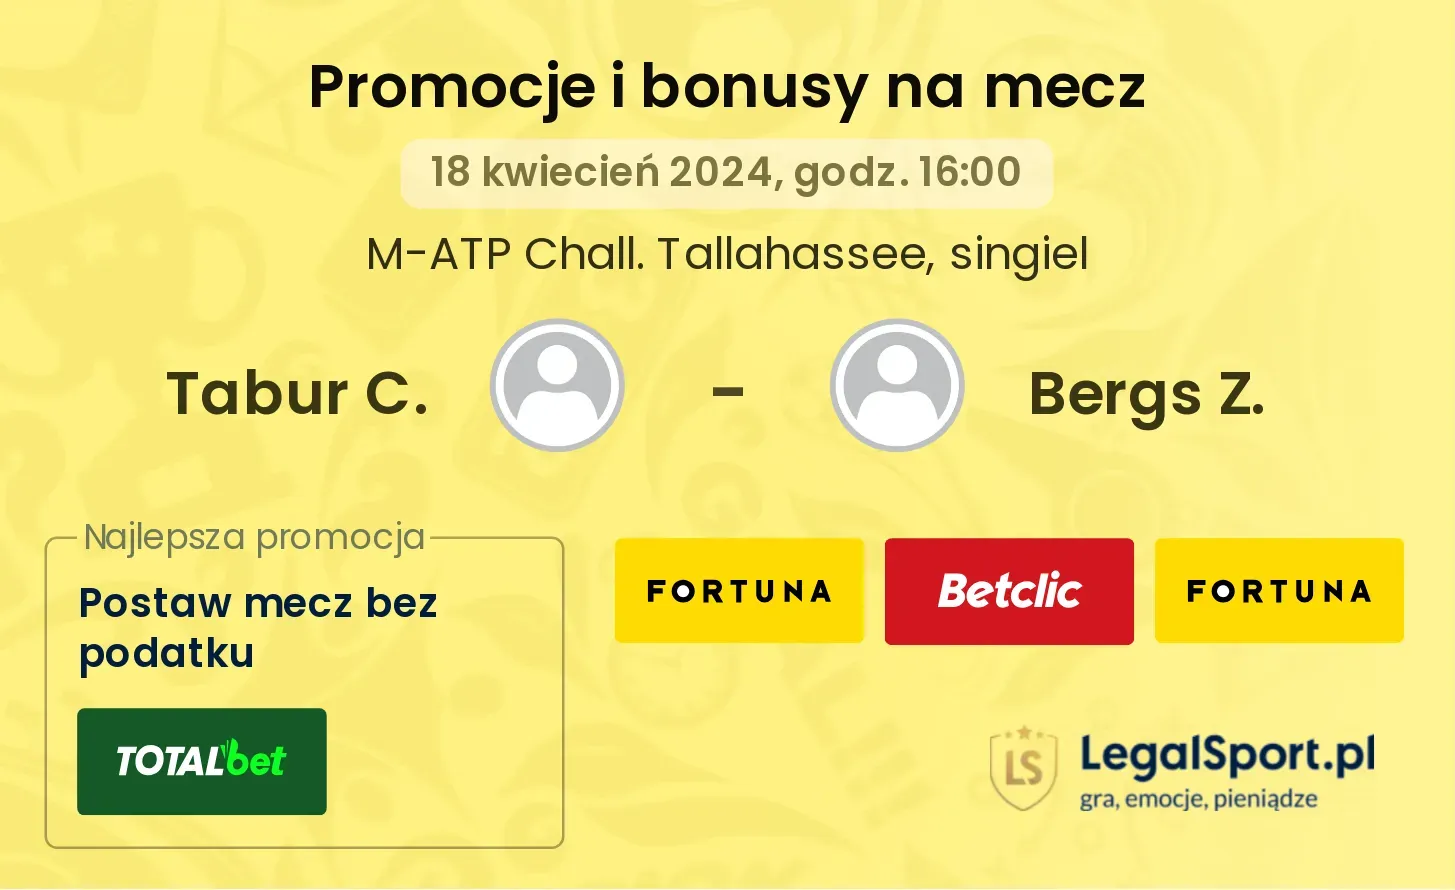 Tabur C. - Bergs Z. promocje bonusy na mecz